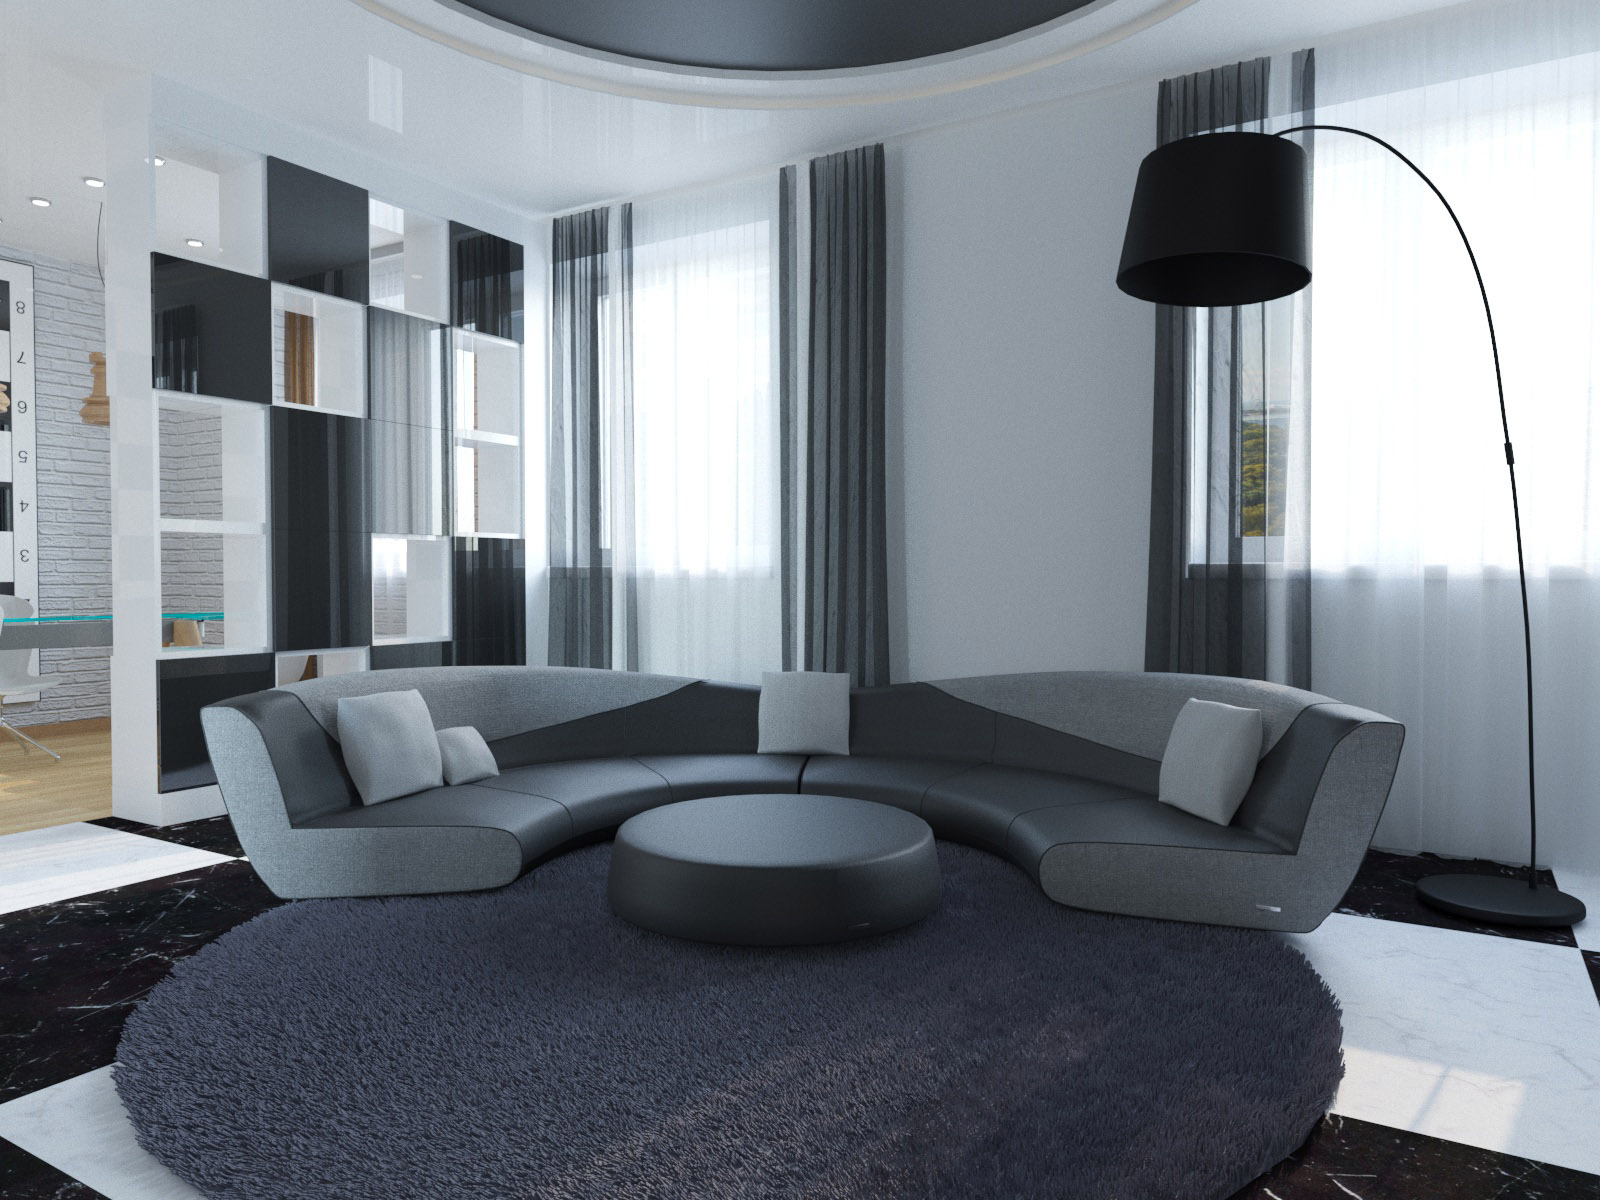 होटल में डिजाइन रूम। 3d max corona render में प्रस्तुत छवि